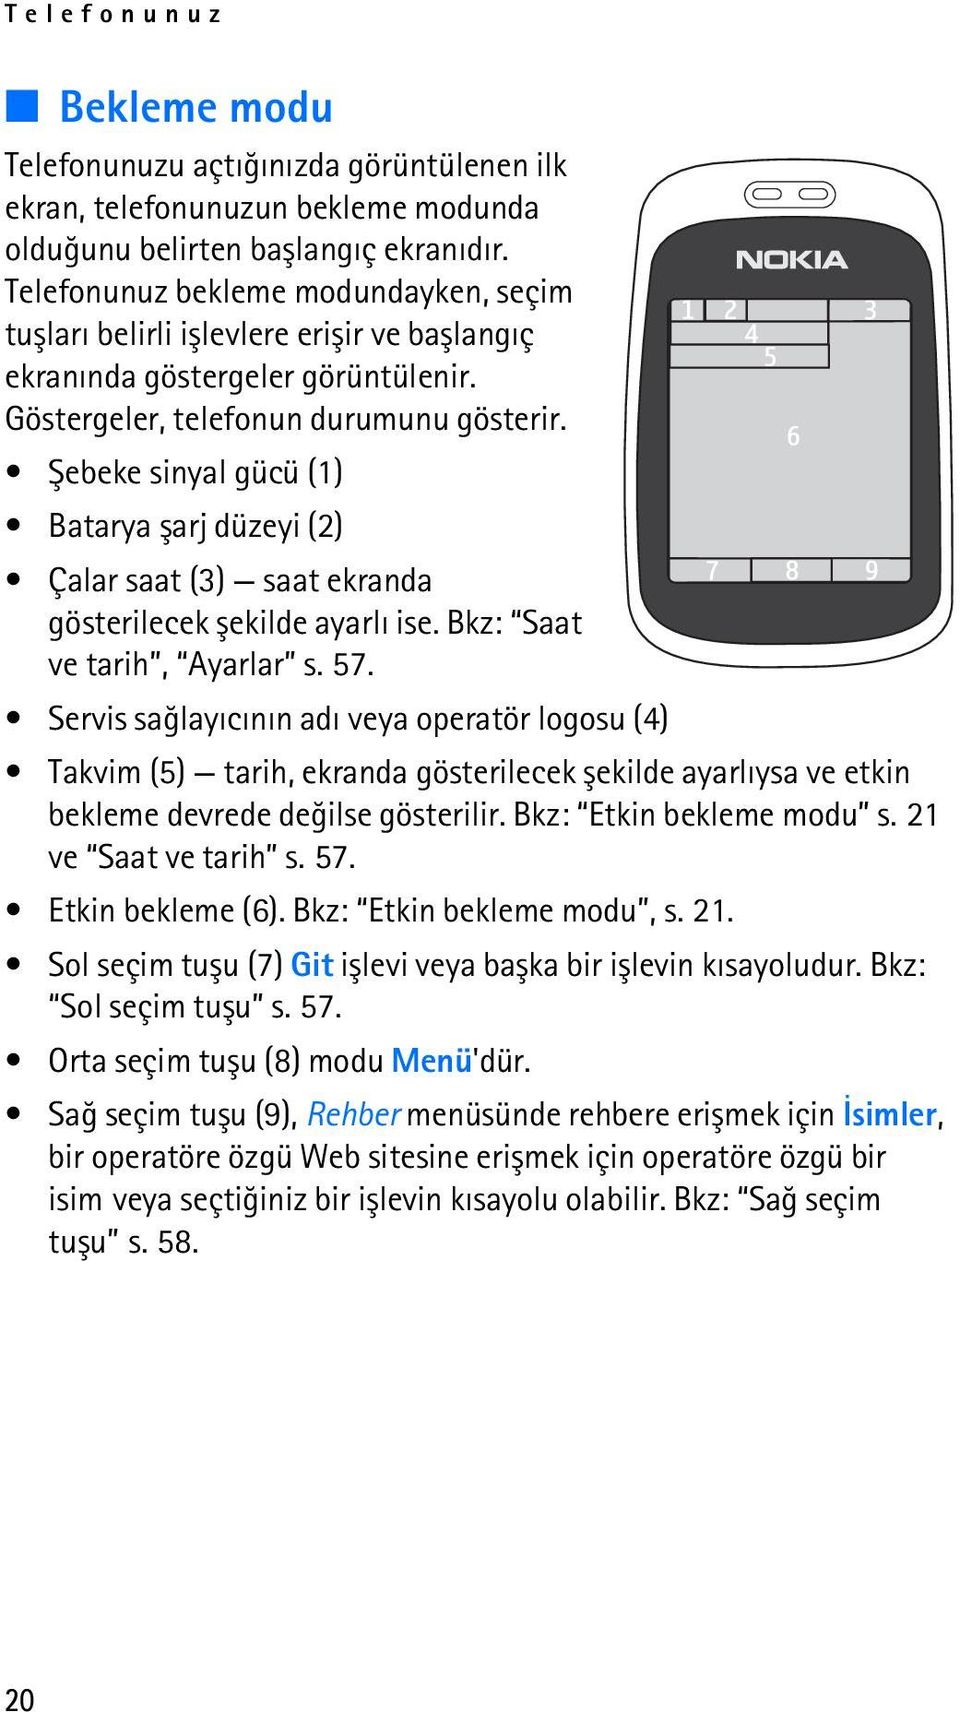 Þebeke sinyal gücü (1) Batarya þarj düzeyi (2) Çalar saat (3) saat ekranda gösterilecek þekilde ayarlý ise. Bkz: Saat ve tarih, Ayarlar s. 57.